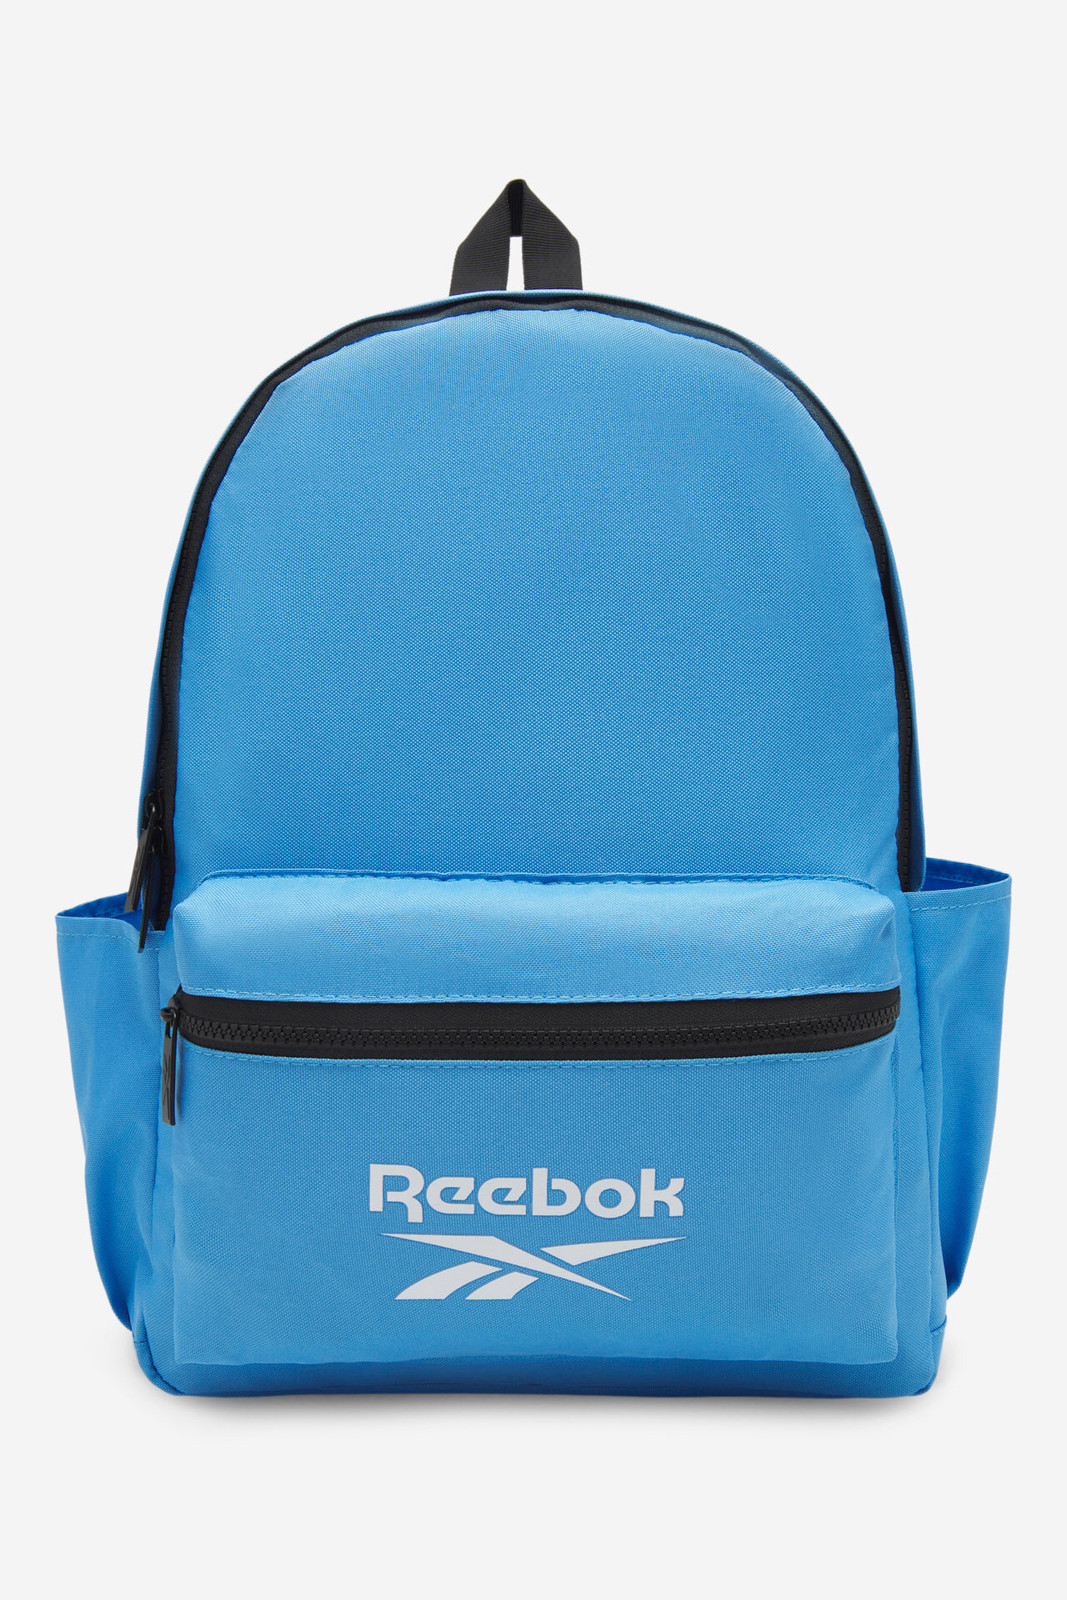 Batohy a tašky Reebok RBK-001-CCC-05